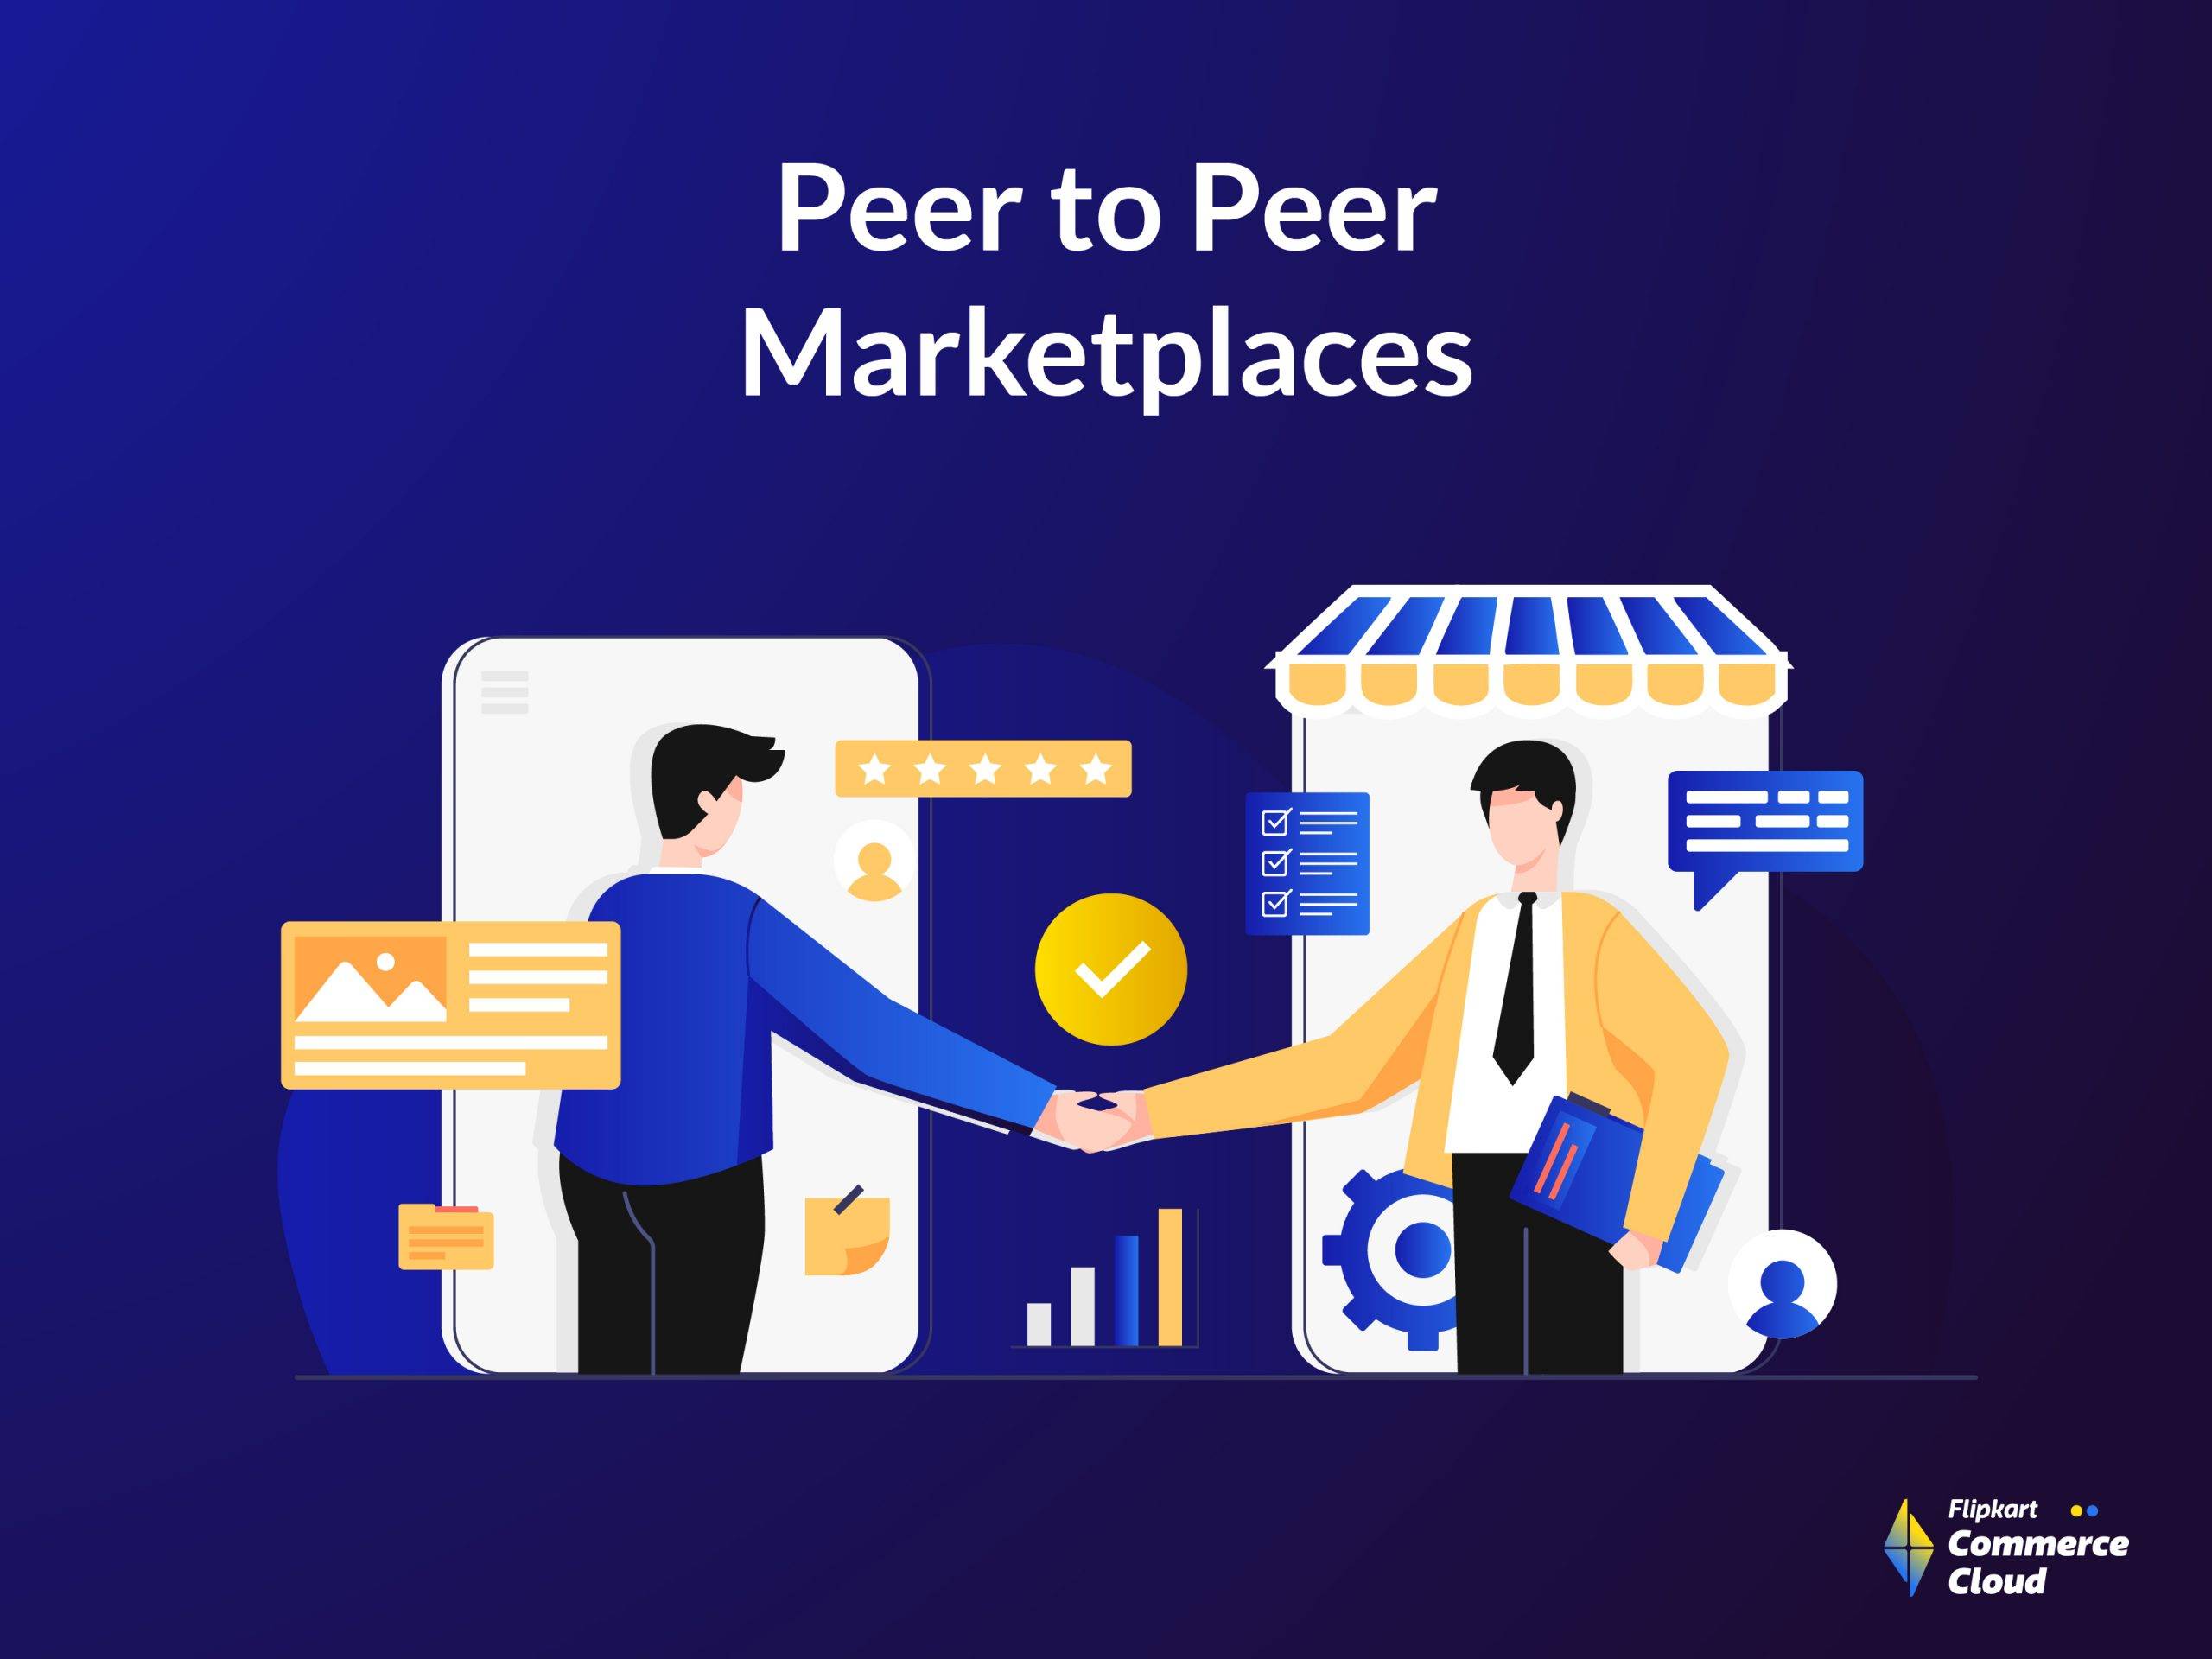 What is peer to peer marketplace